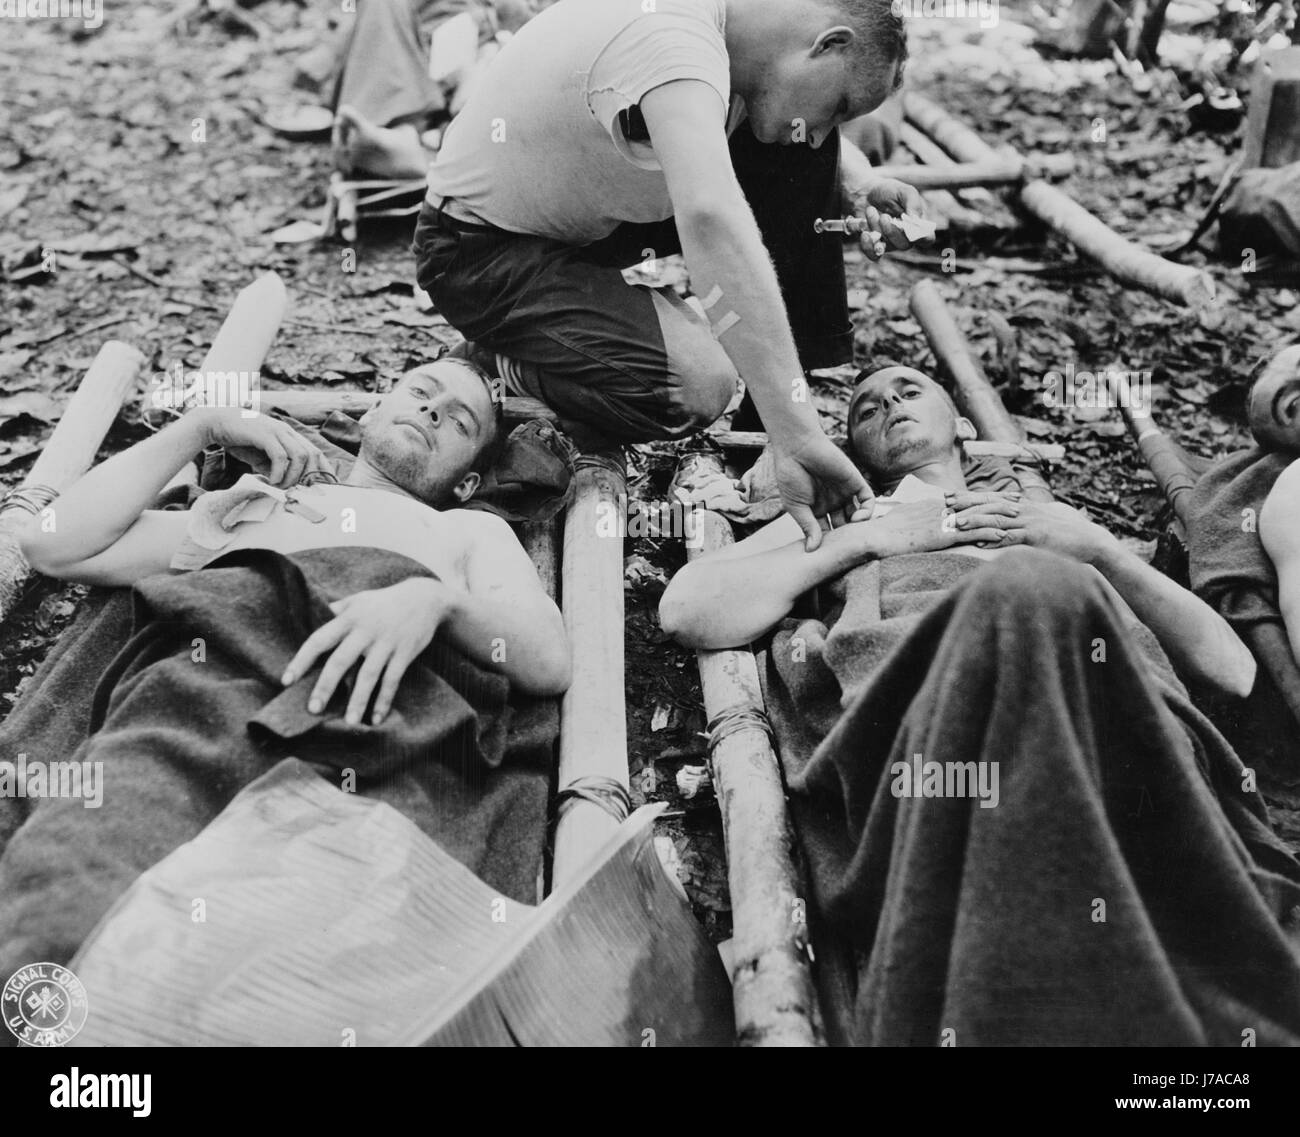 La direction médicale à prêter une attention particulière aux soldats américains blessés en Guinée, vers 1942-1945. Banque D'Images